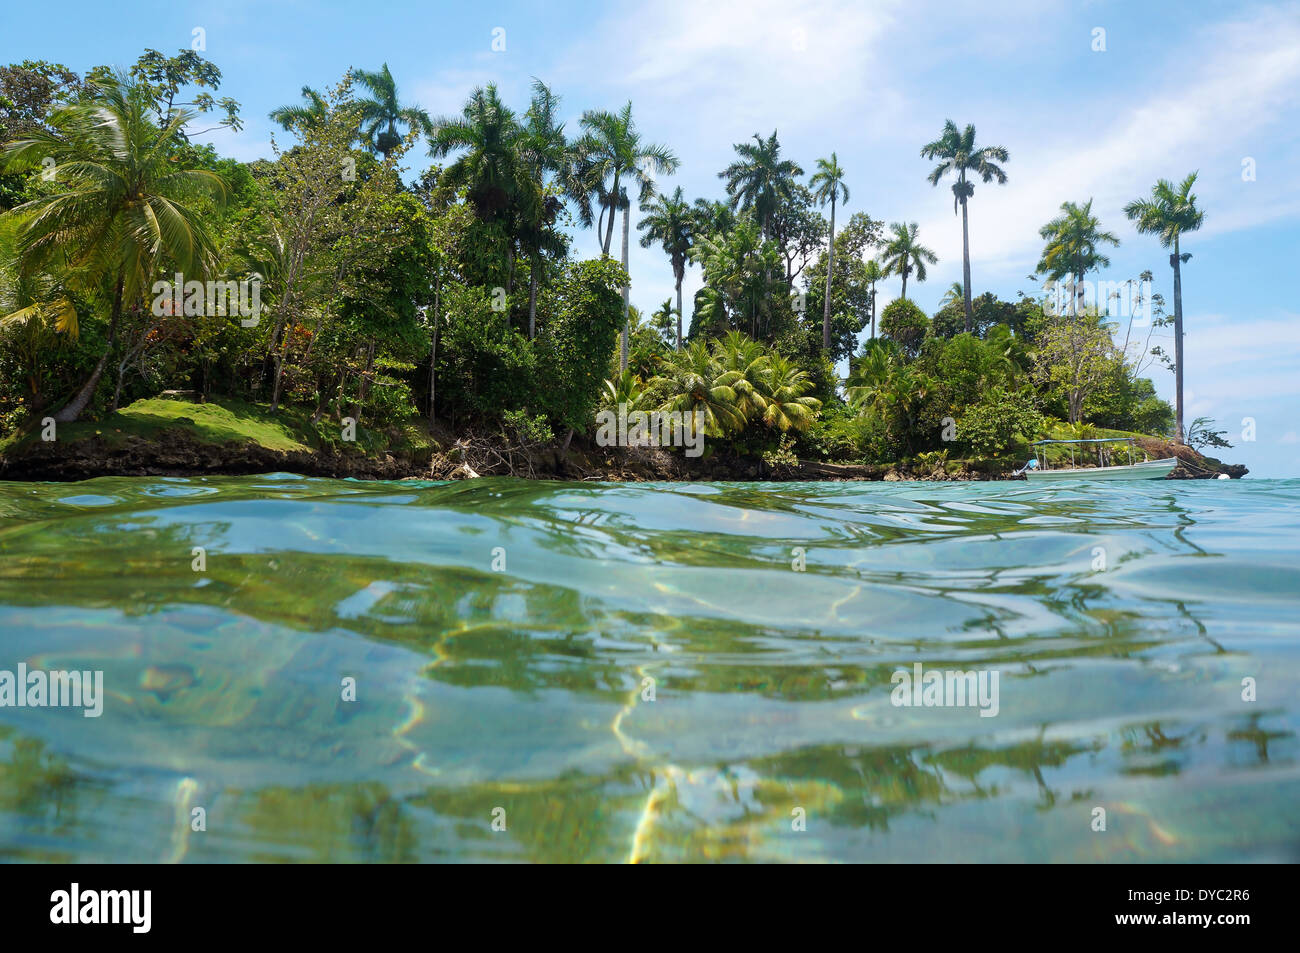 Île tropicale avec une végétation luxuriante et d'un bateau sur la bouée d'amarrage, vu de la surface de l'eau de la mer des Caraïbes, le Panama Banque D'Images